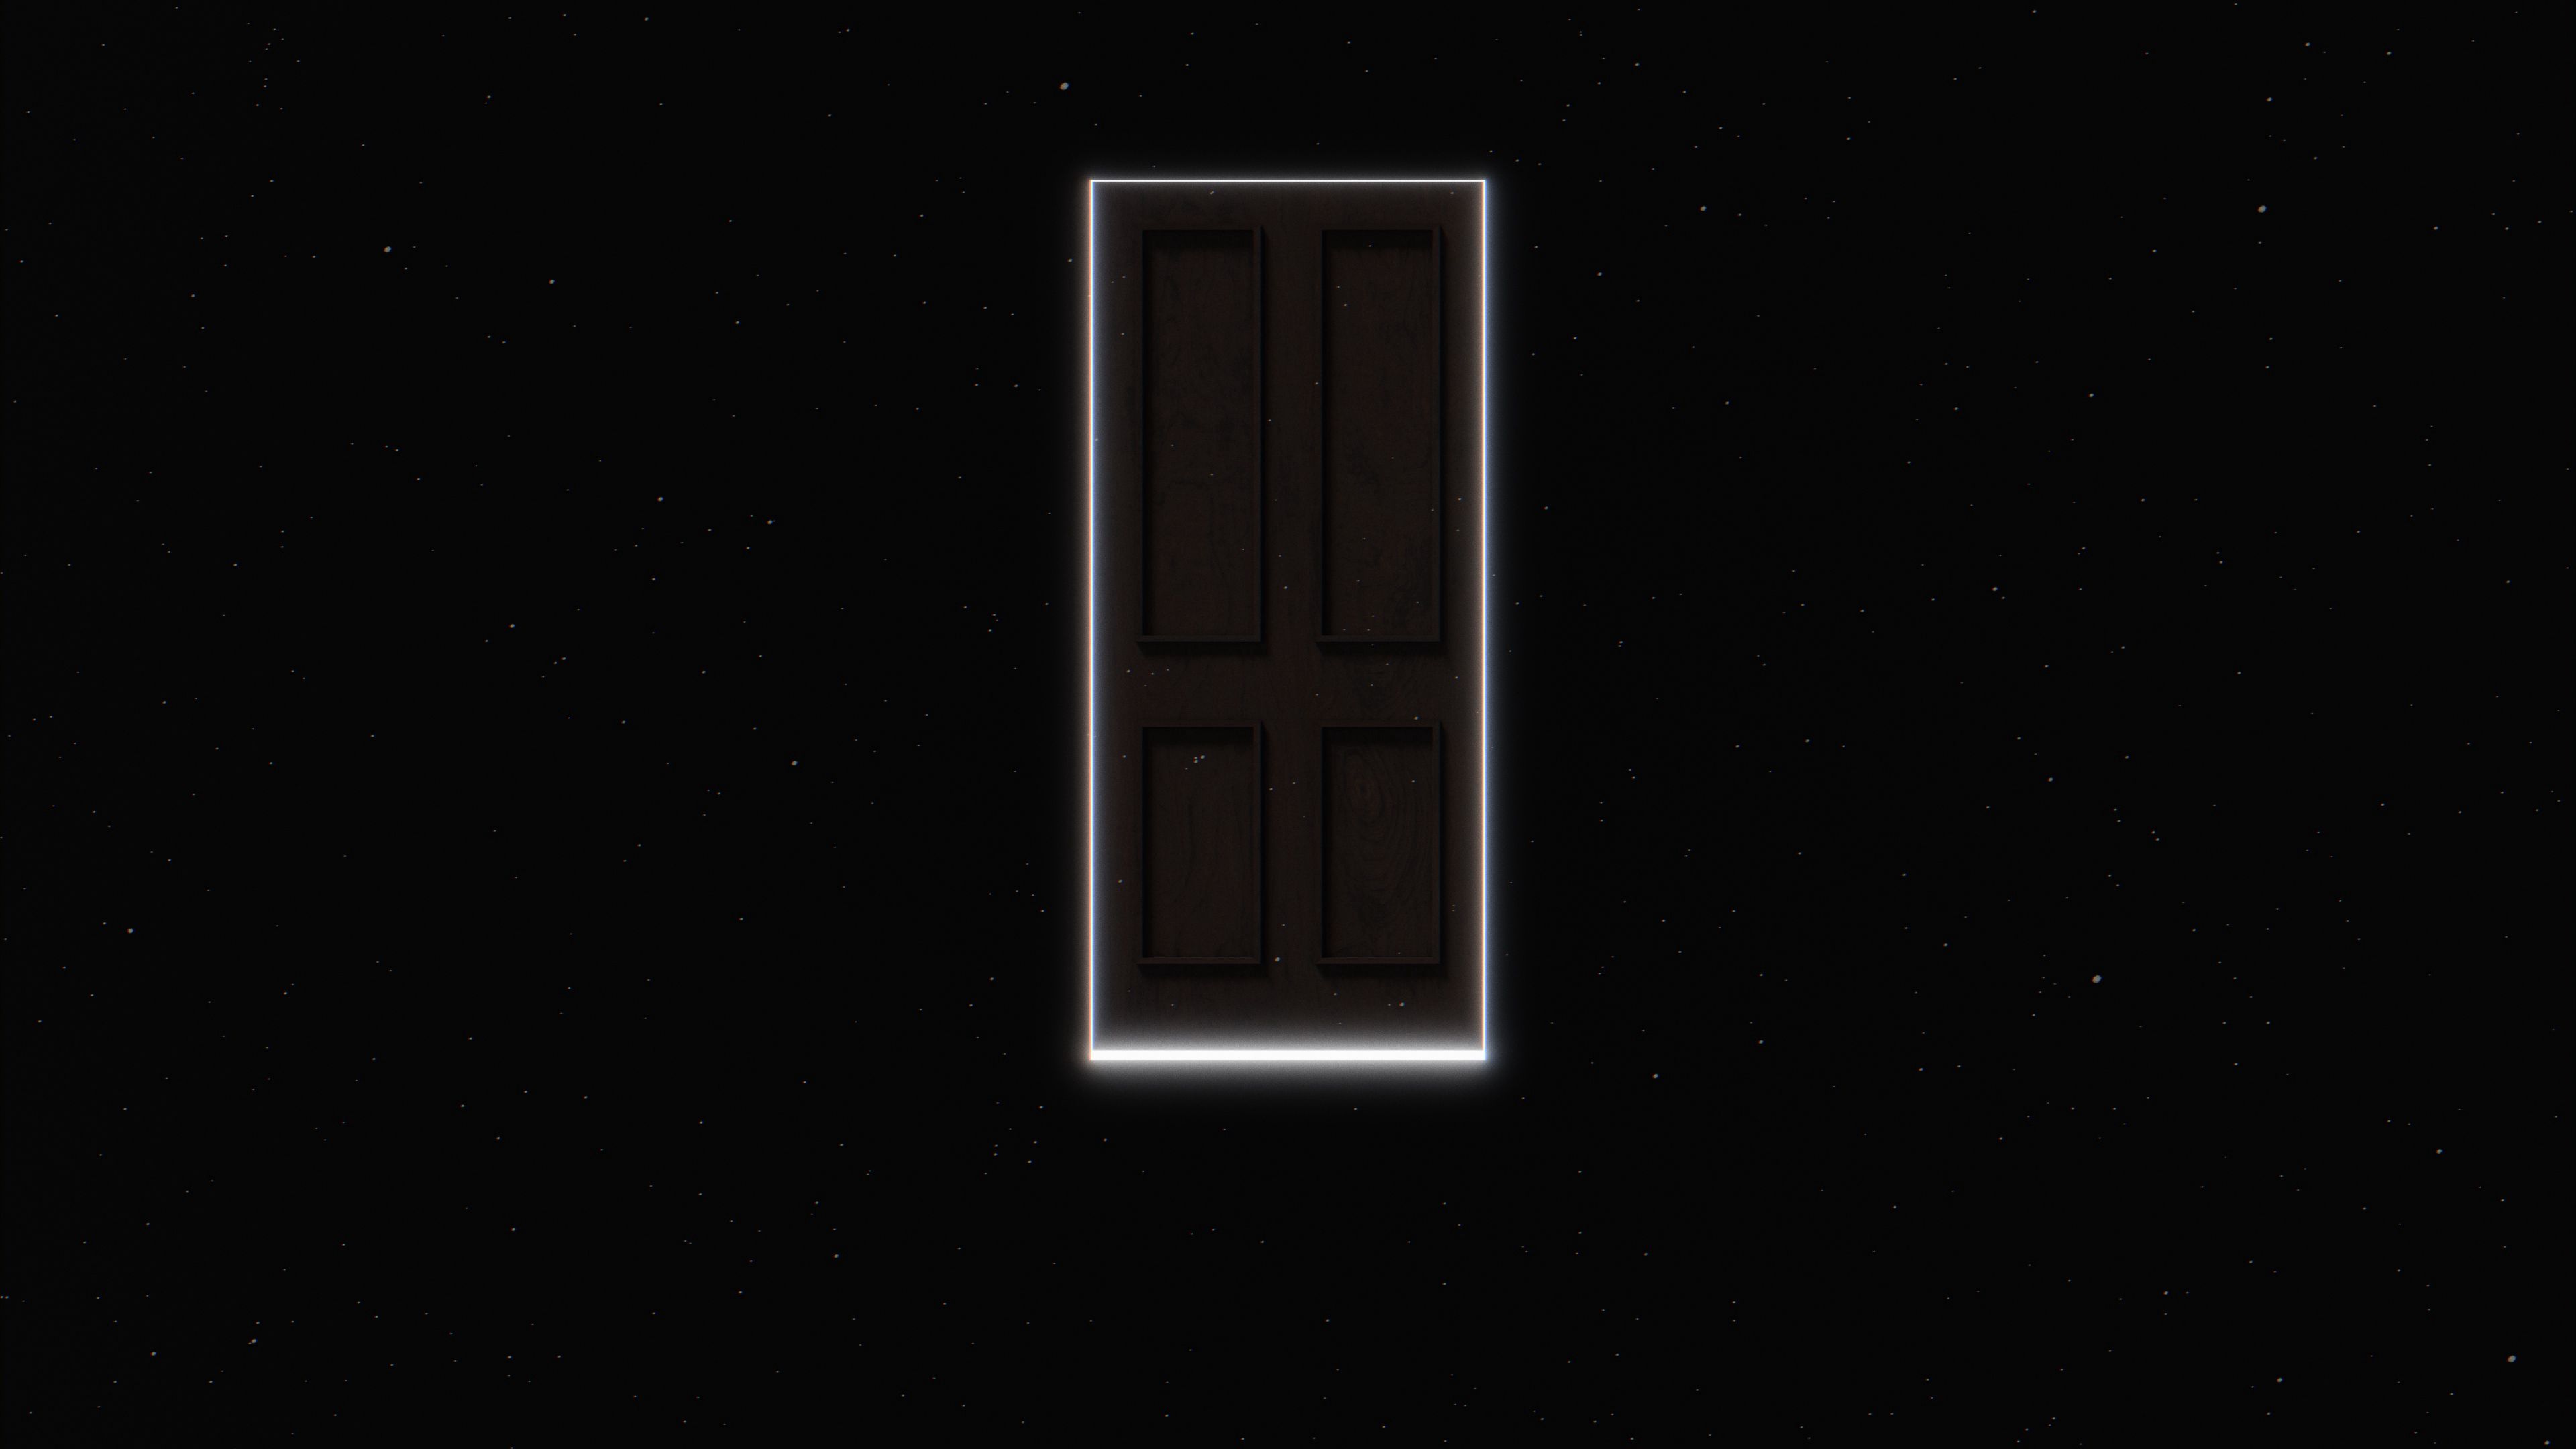 universe, portal, black, dark, glow, door cell phone wallpapers